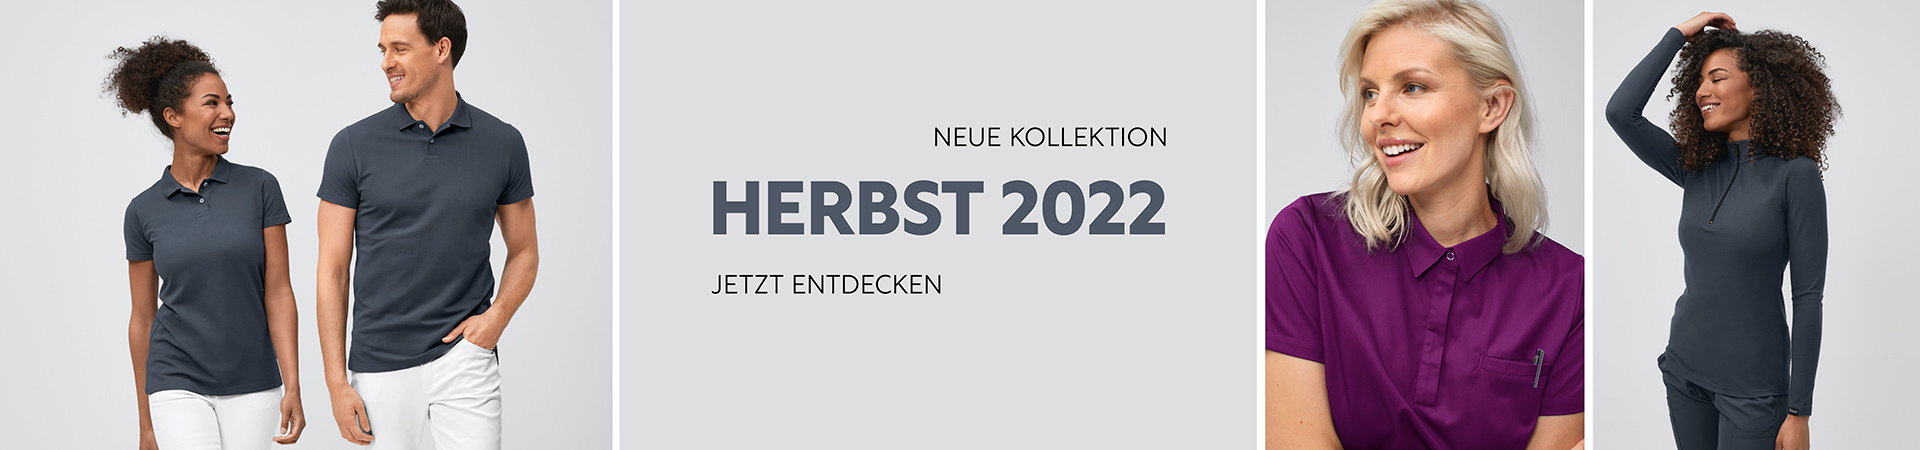 Neue Kollektion Herbst 2022